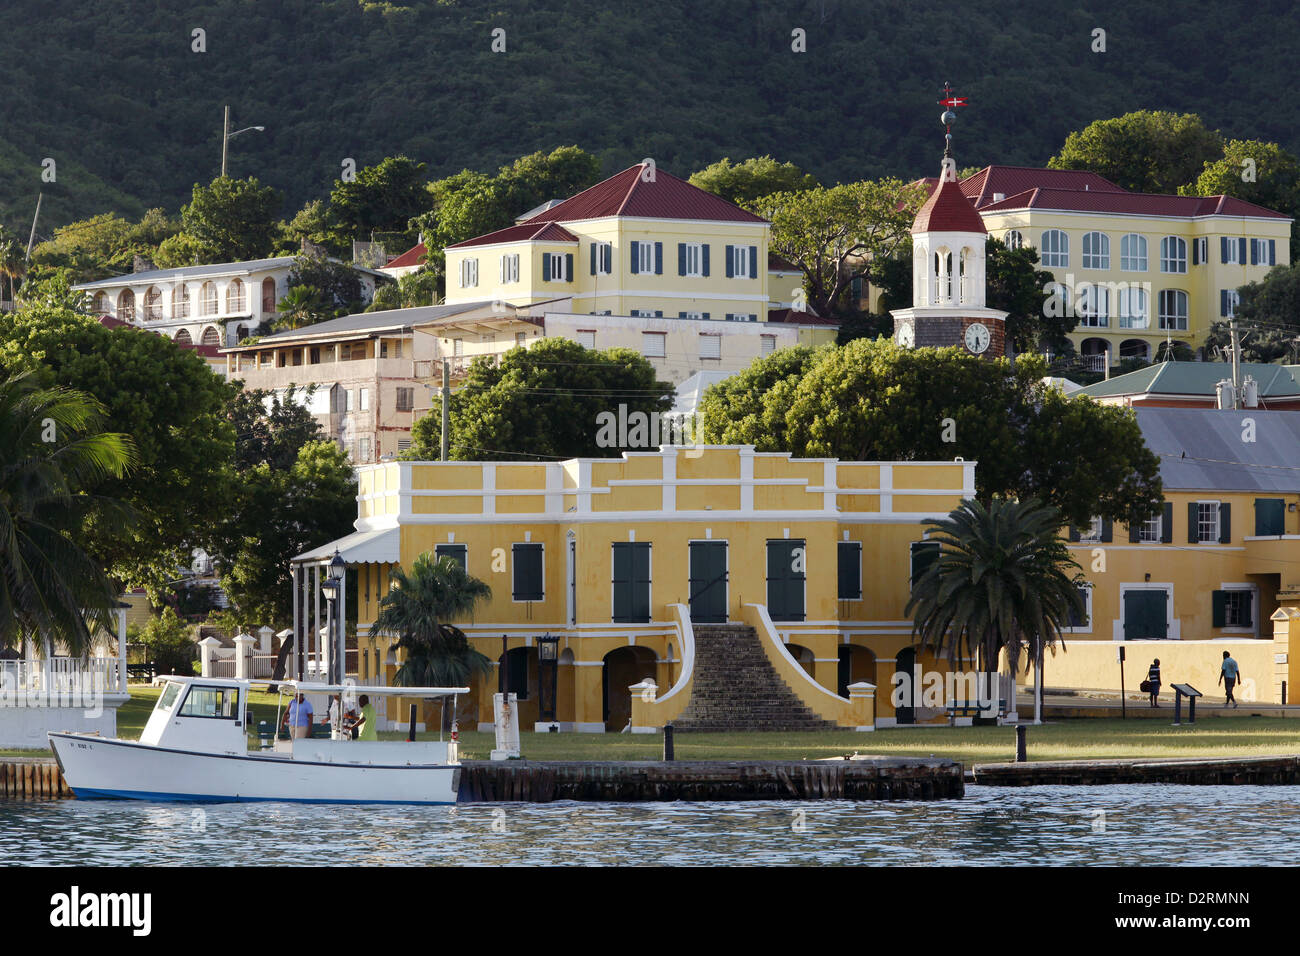 Alte dänische Zollhaus & kleines Boot, Protestant Cay, Christiansted, St. Croix, Amerikanische Jungferninseln, Karibik Stockfoto